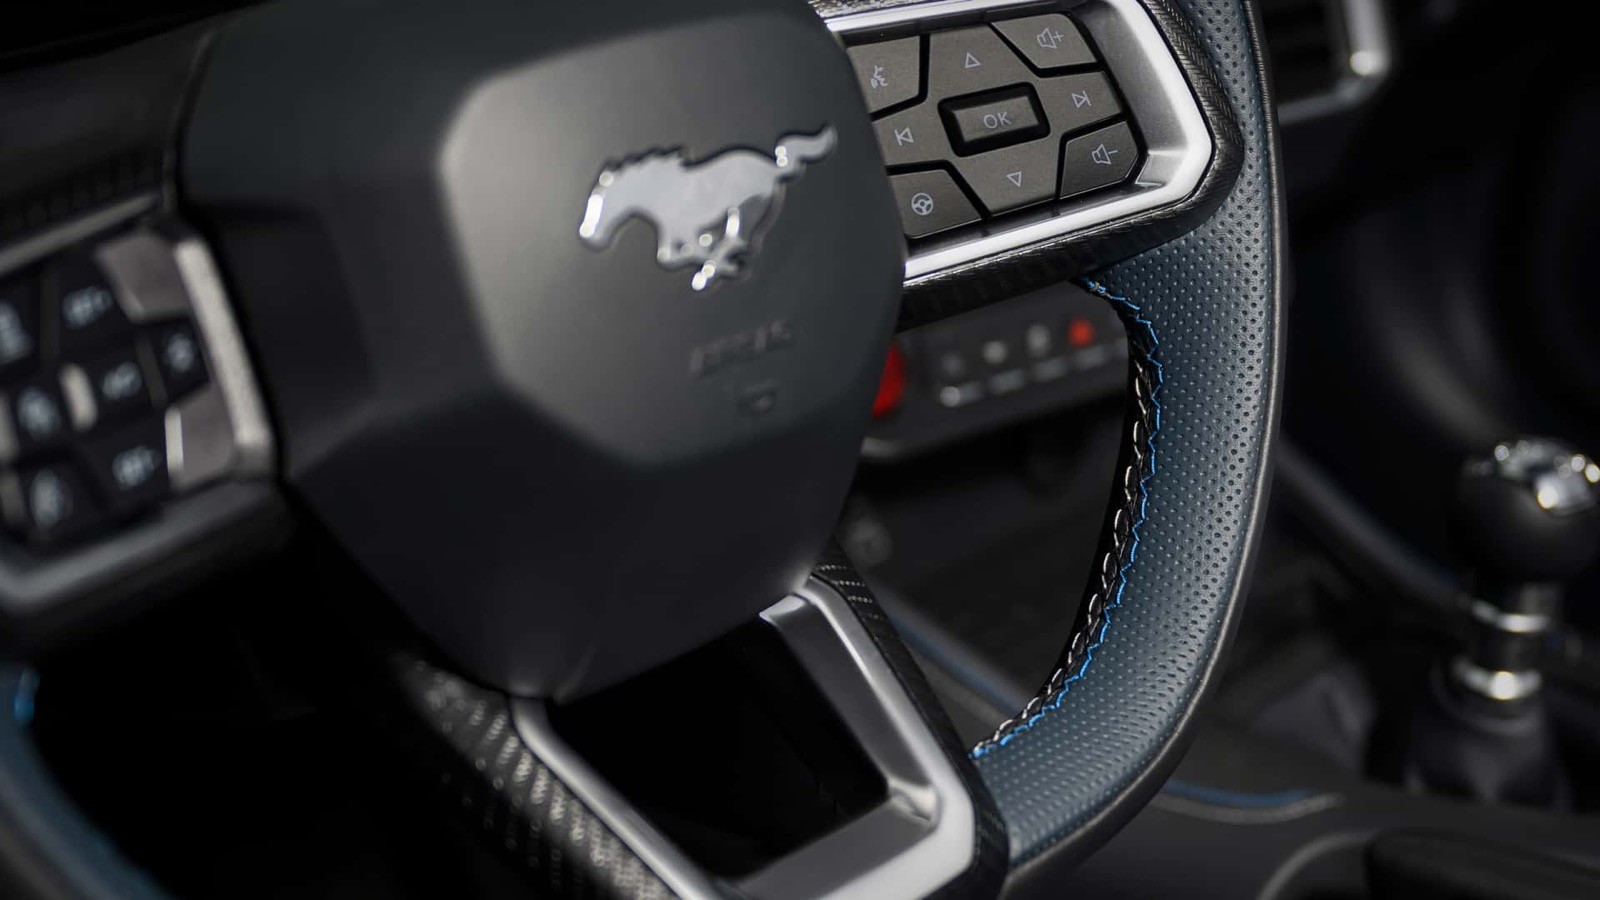 Mustang GT CS